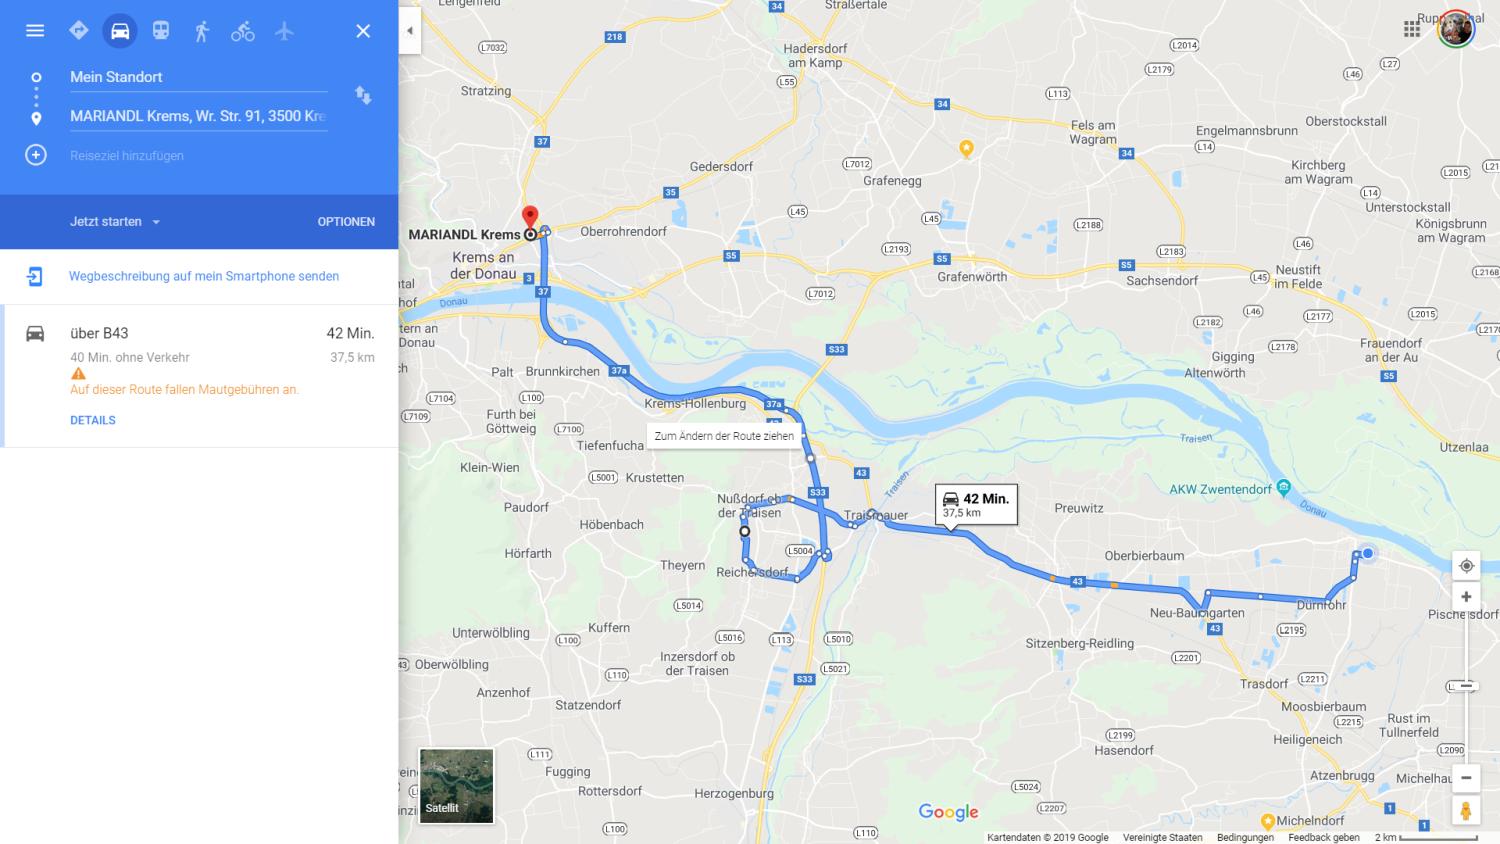 Google Maps Optimierte Routenplanung So Lassen Sich Vorgeschlagene Routen Sehr Einfach Anpassen Gwb